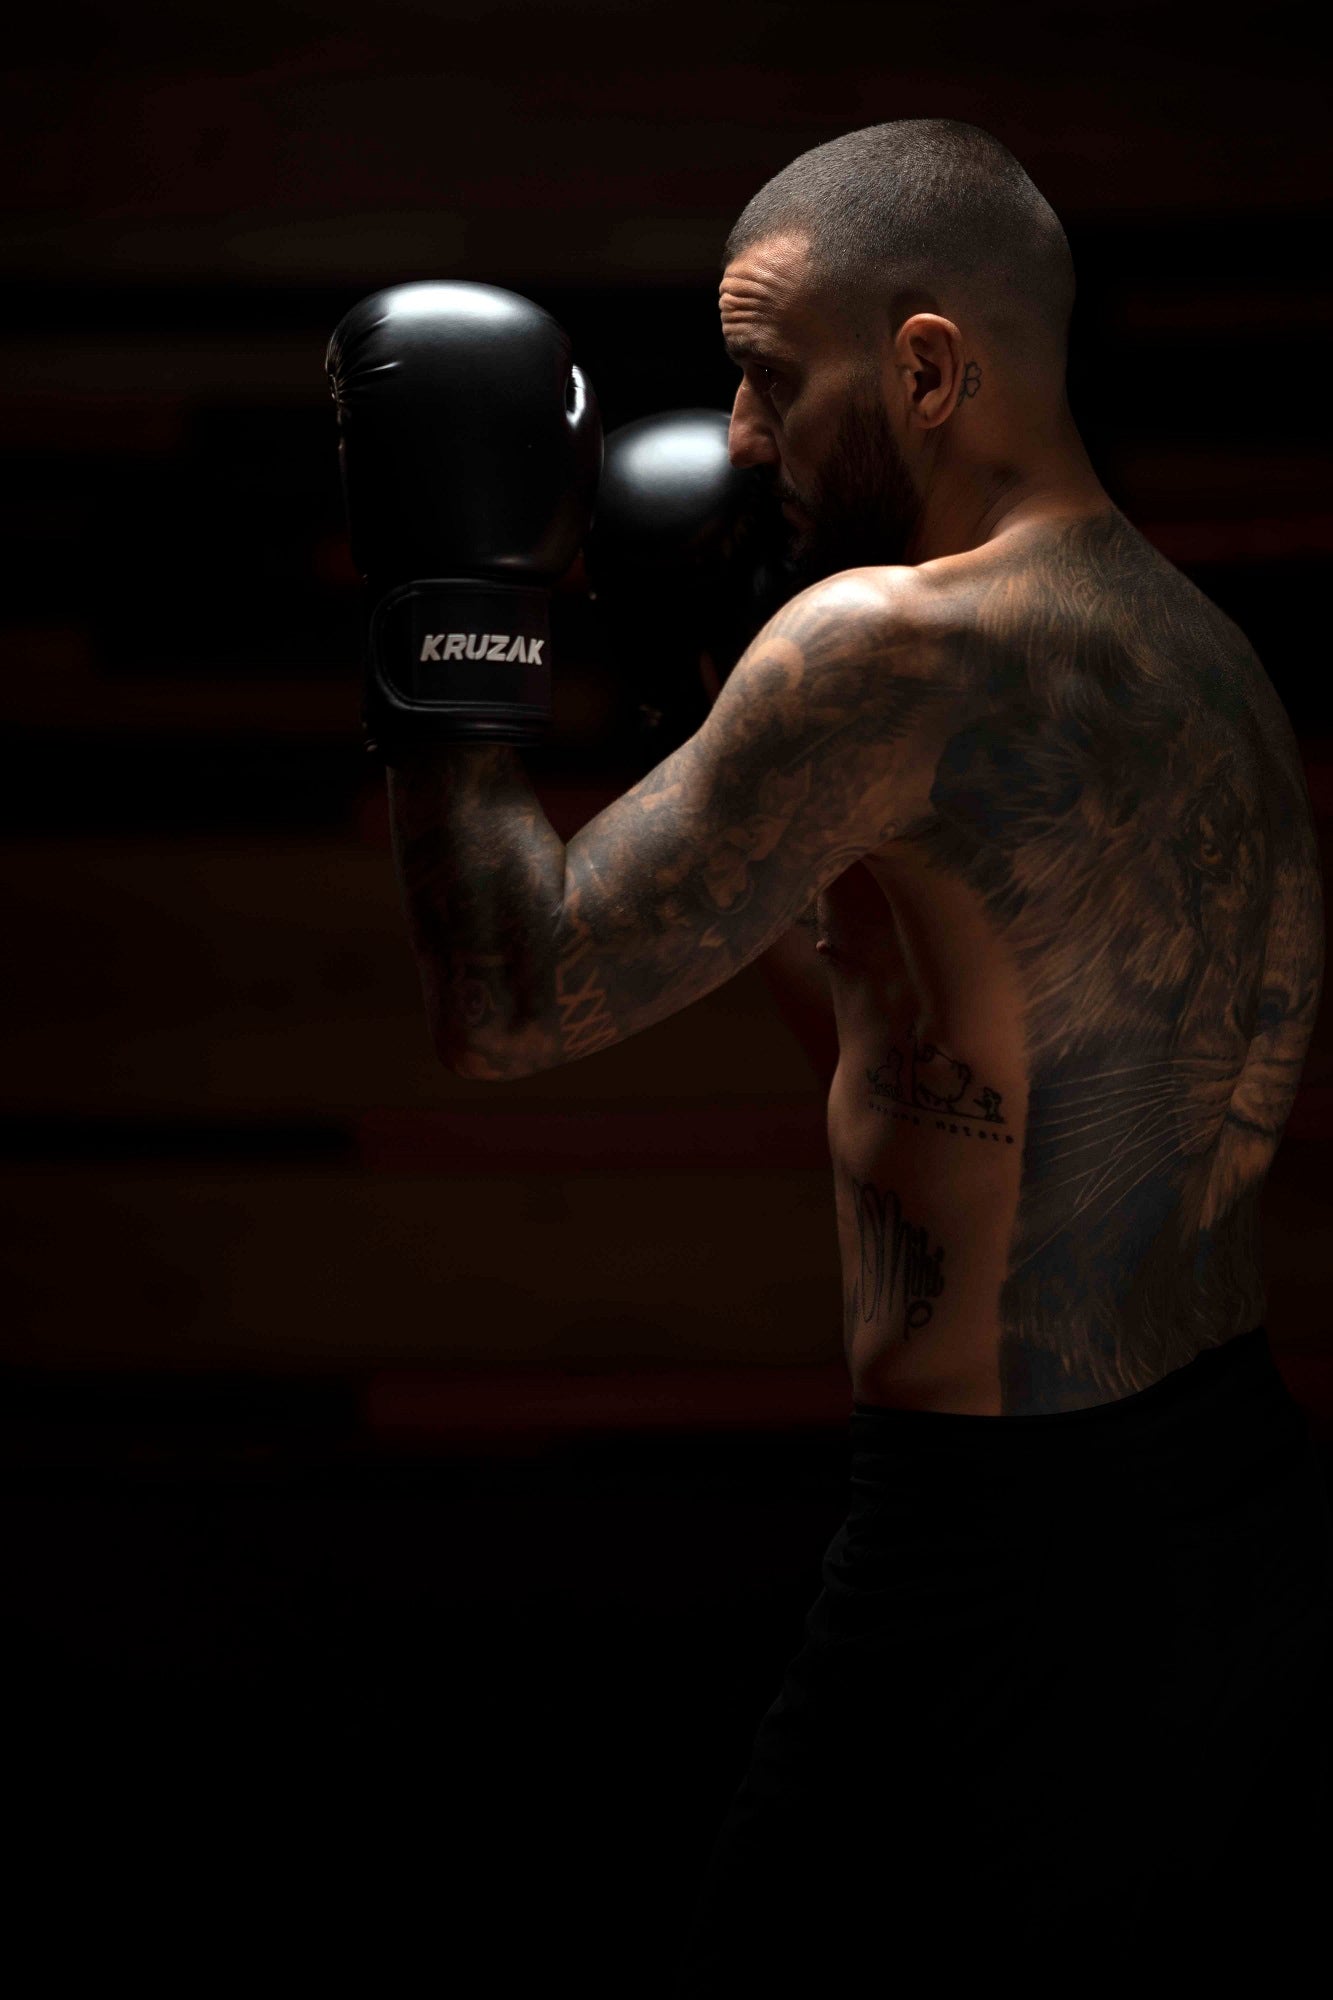 Man wearing Kruzak Black boxing gloves